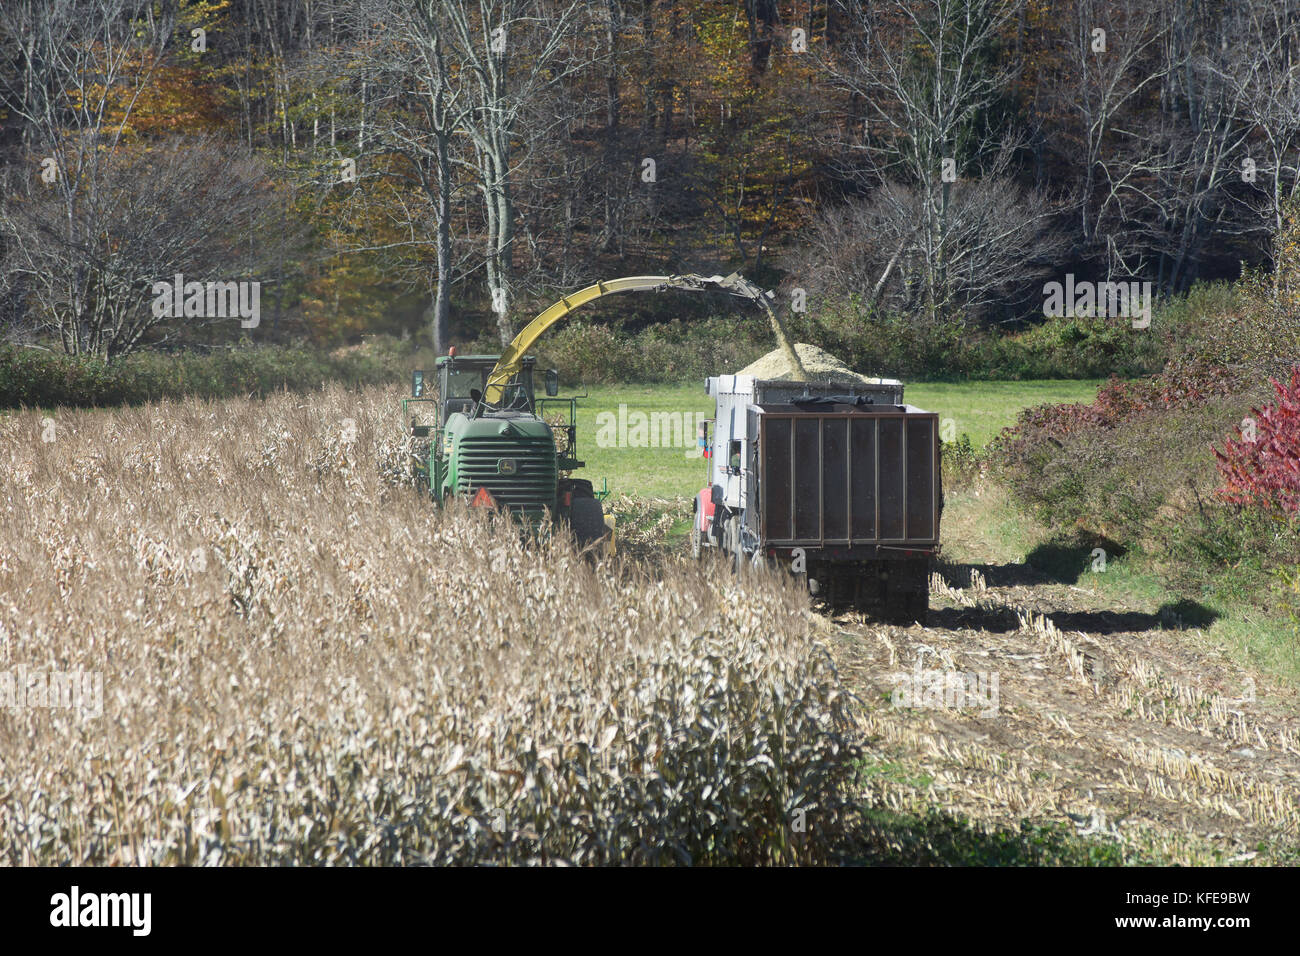 La récolte d'automne de l'staulks de maïs pour nourrir les bovins pendant l'hiver dans le Vermont, usa Banque D'Images